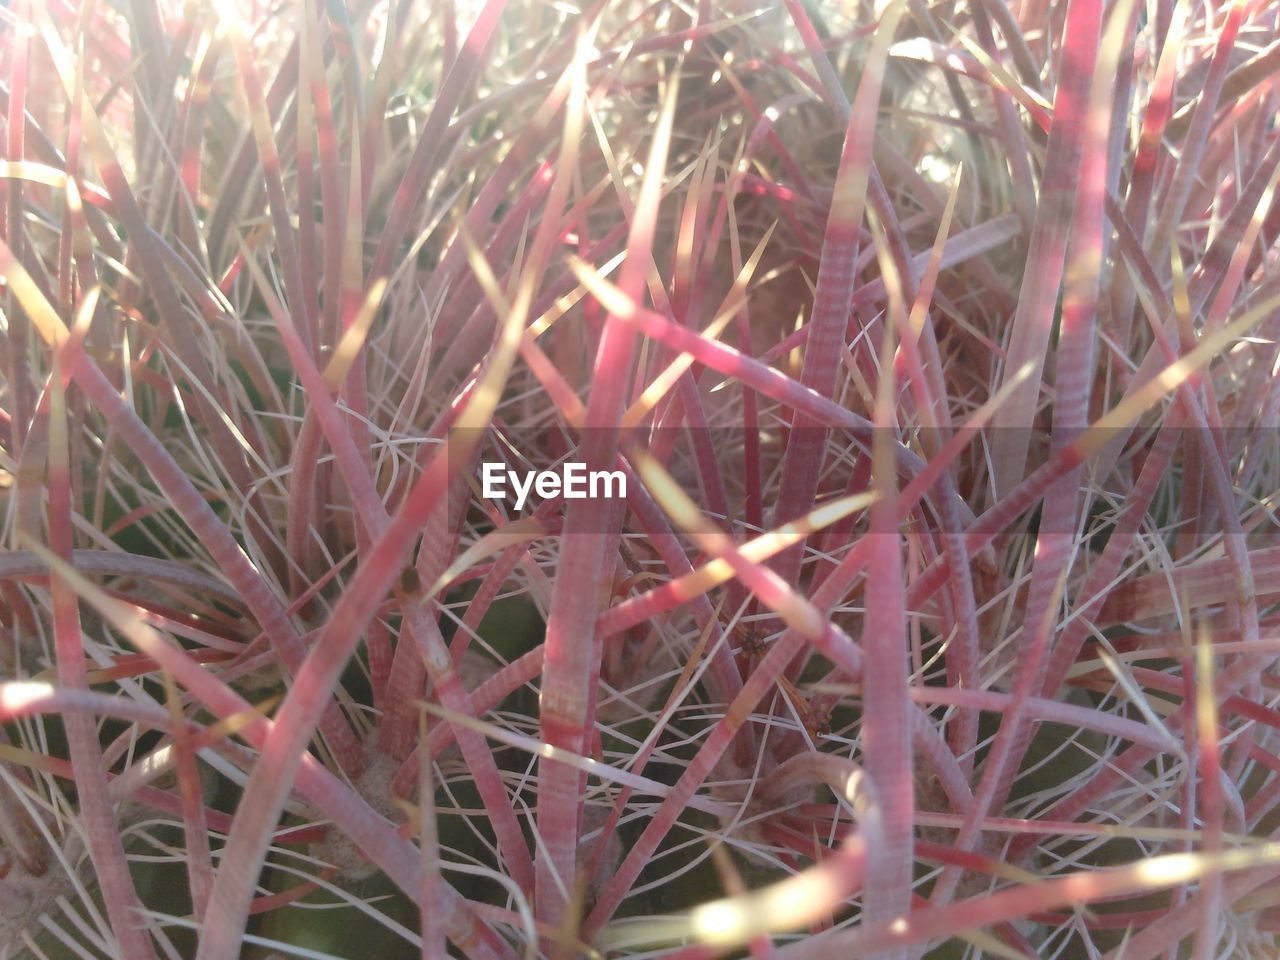 Close-up of a barrel cactus